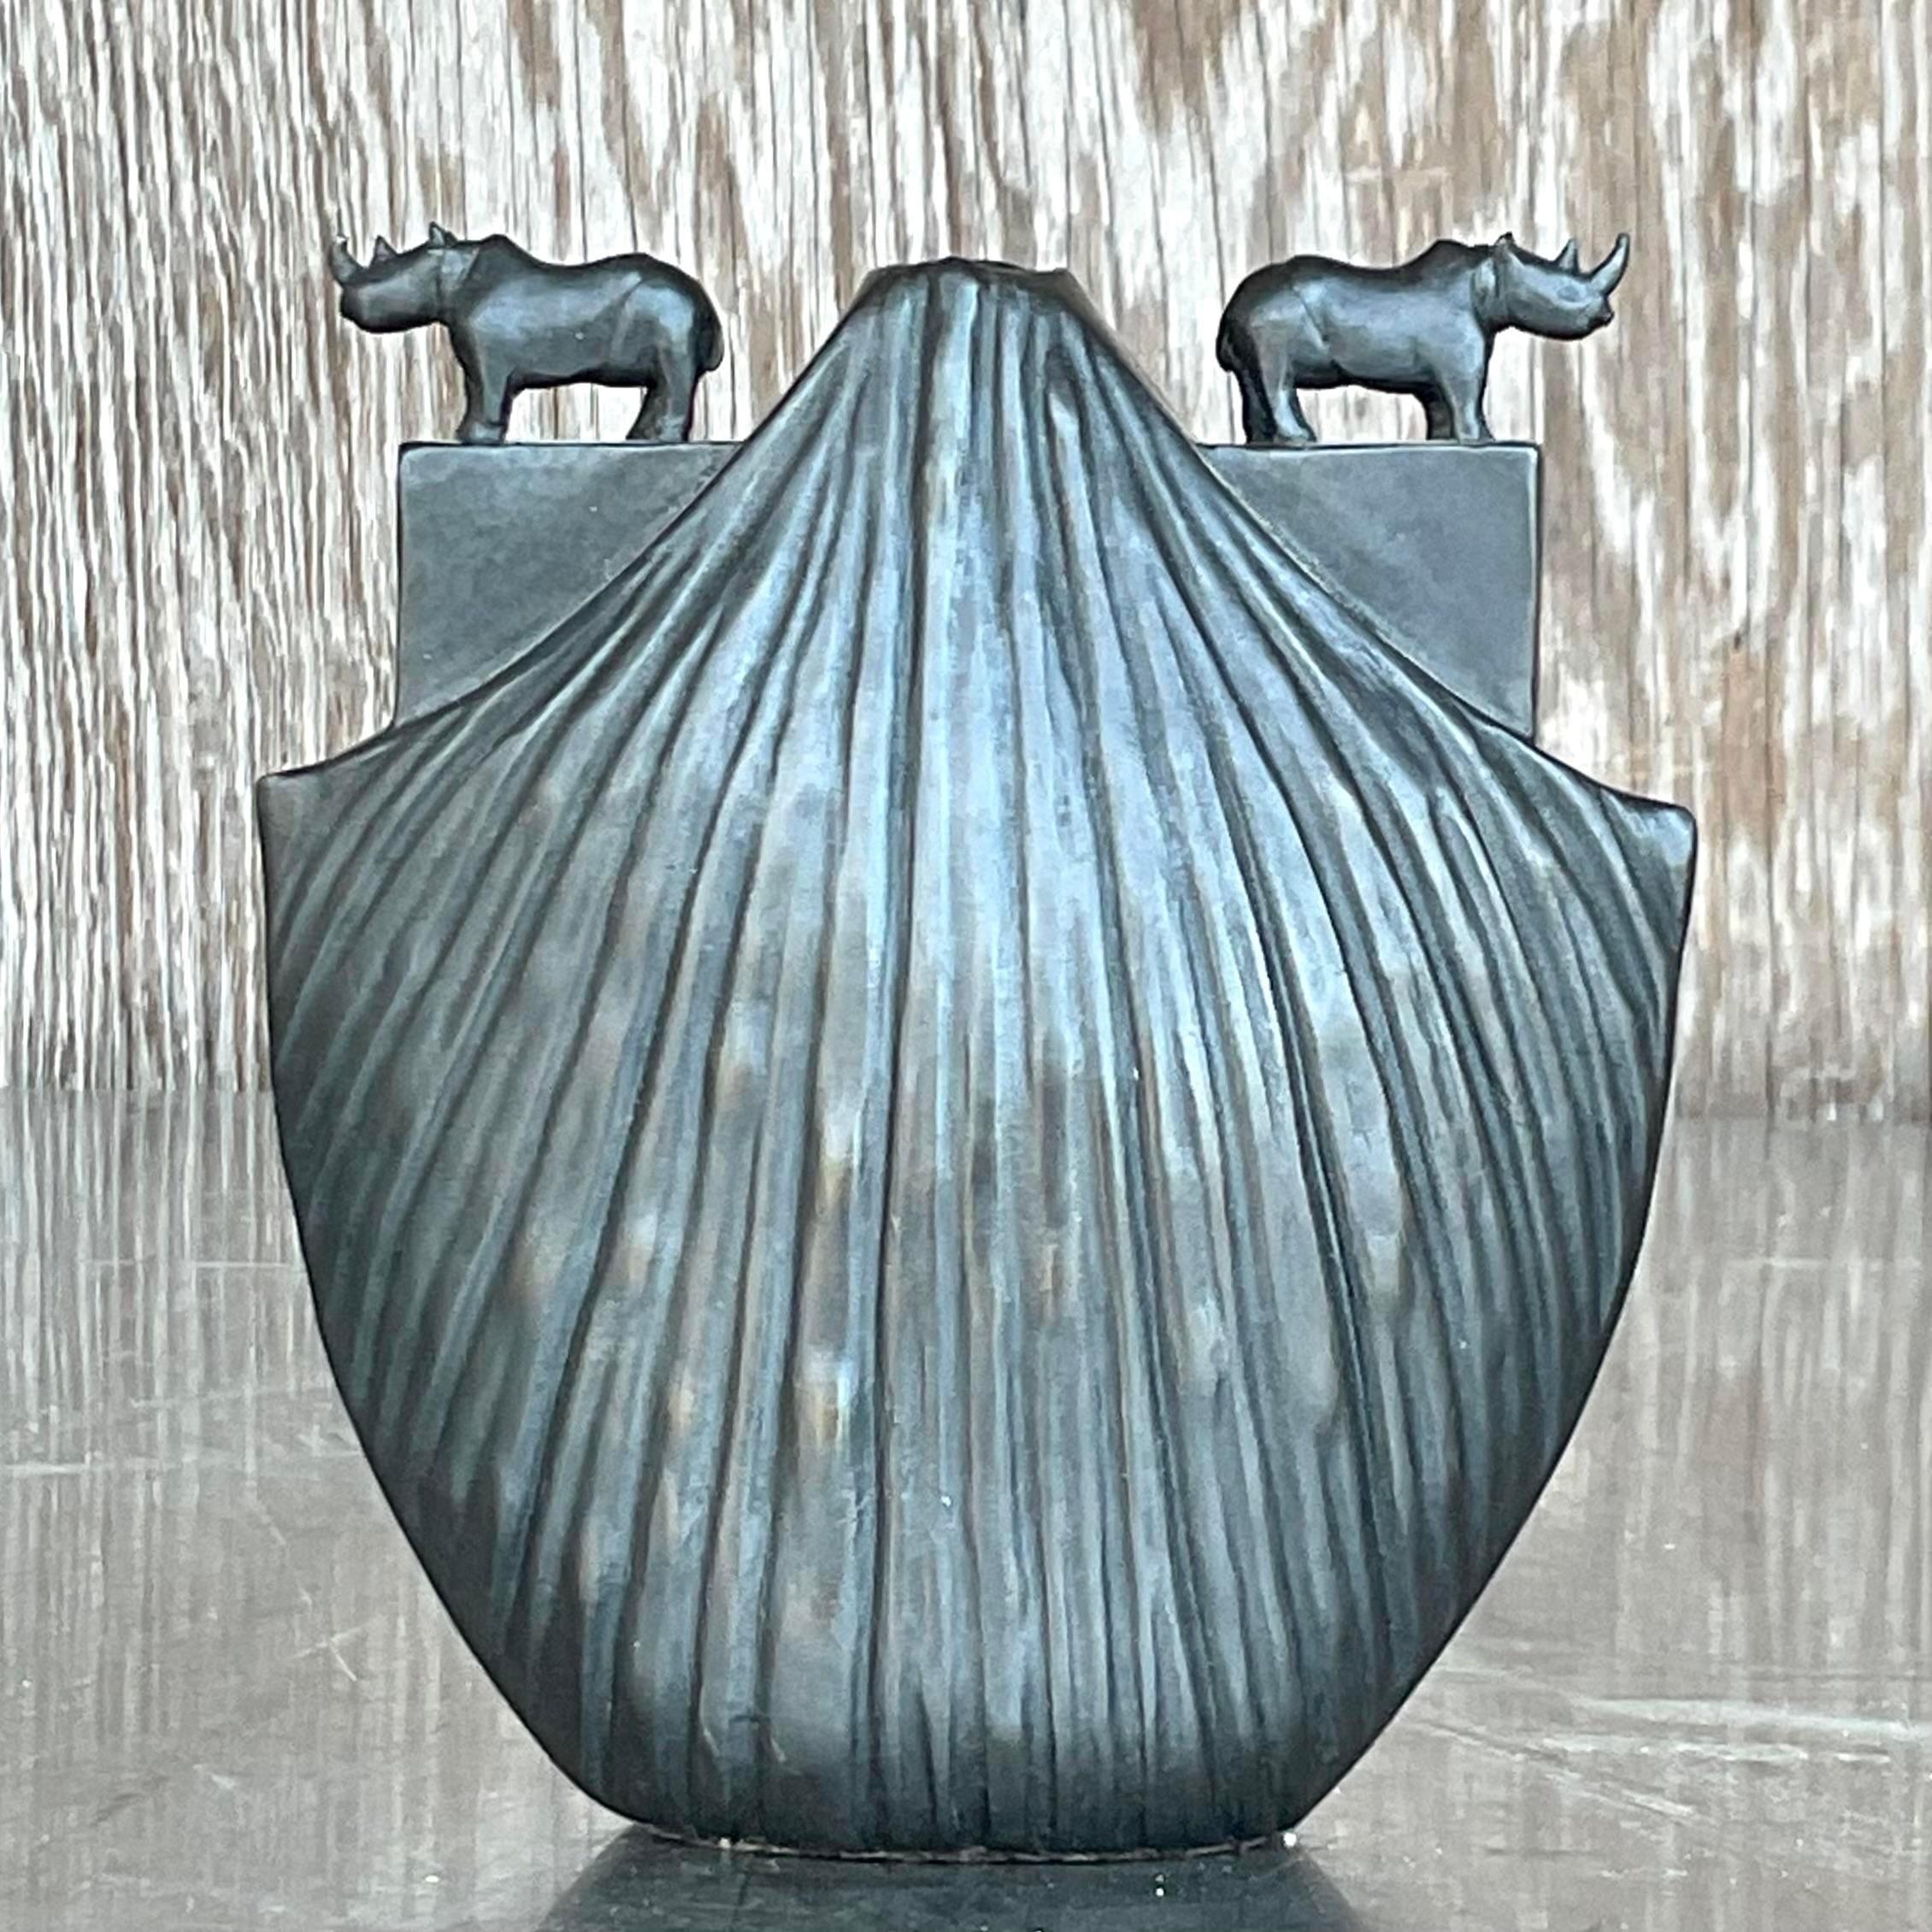 Un superbe vase rhinocéros vintage en bronze. Fabriqué à la main par le groupe Pozycinski. Acquis d'une propriété de Palm Beach.